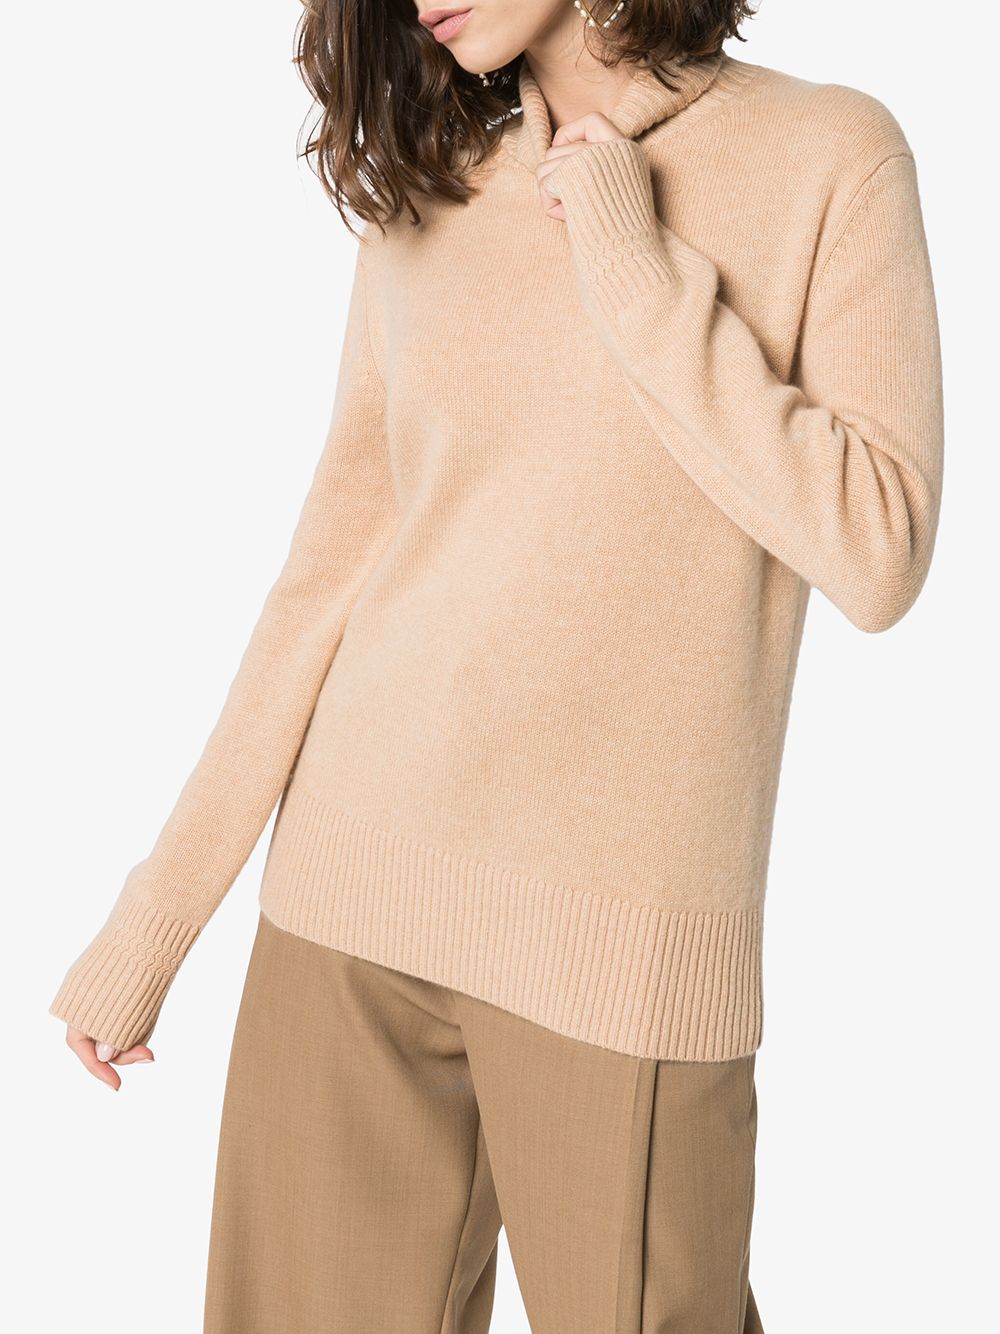 фото Ply-knits кашемировый свитер с высоким воротником